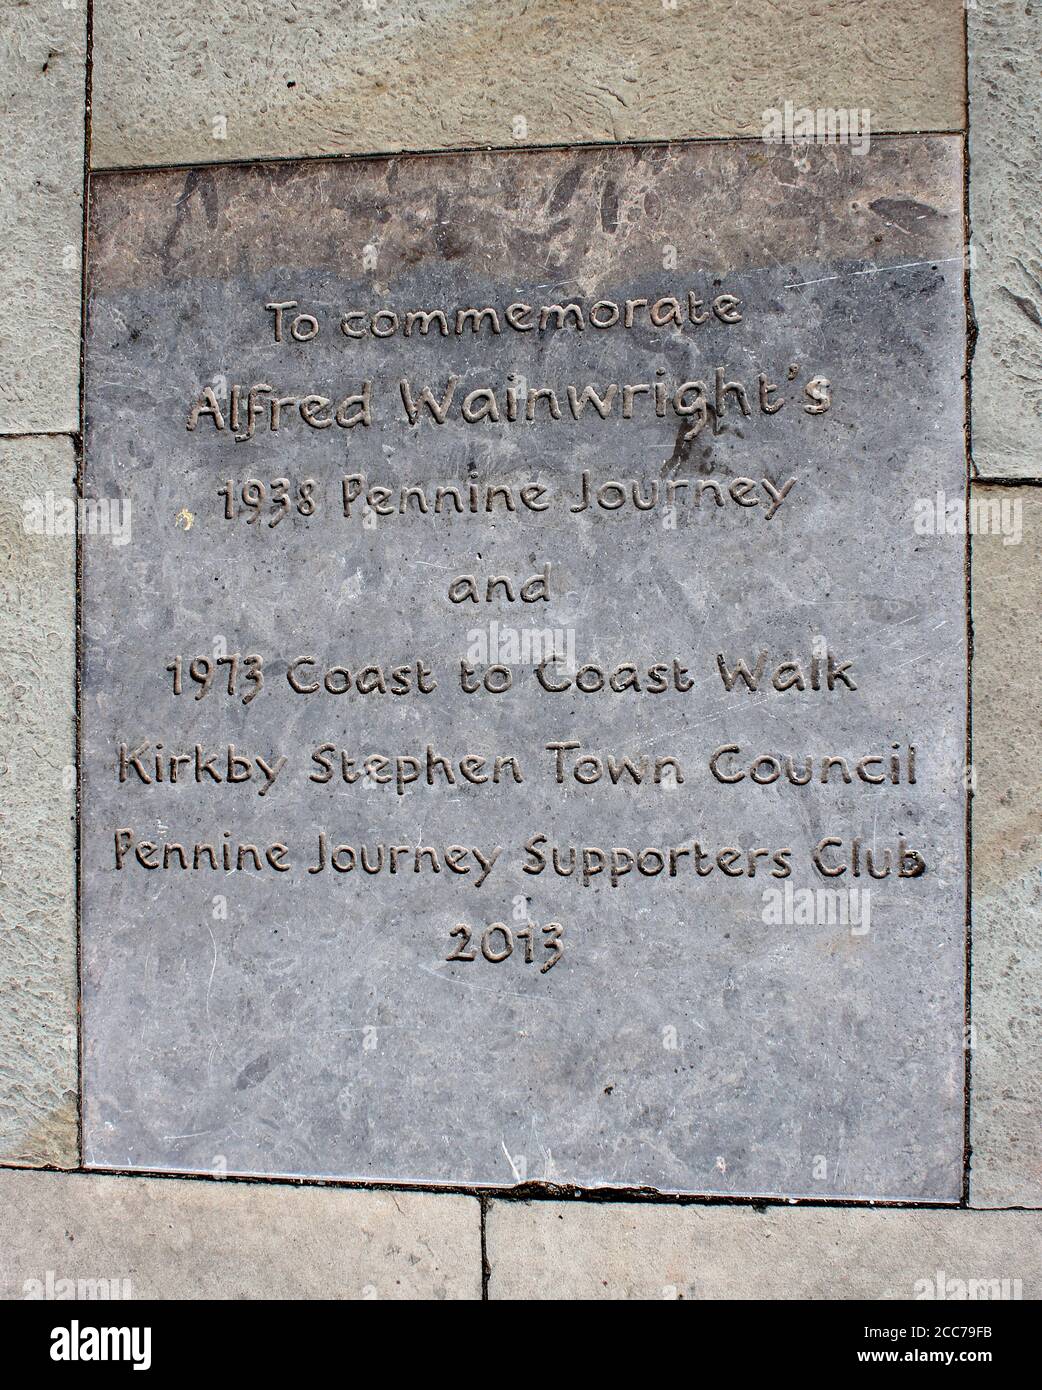 Gedenkgravur Pflasterstein im Gehweg außerhalb der Klöster, Kirkby Stephen, Cumbria Gedenken an Alfred Wainwright Spaziergänge. Stockfoto